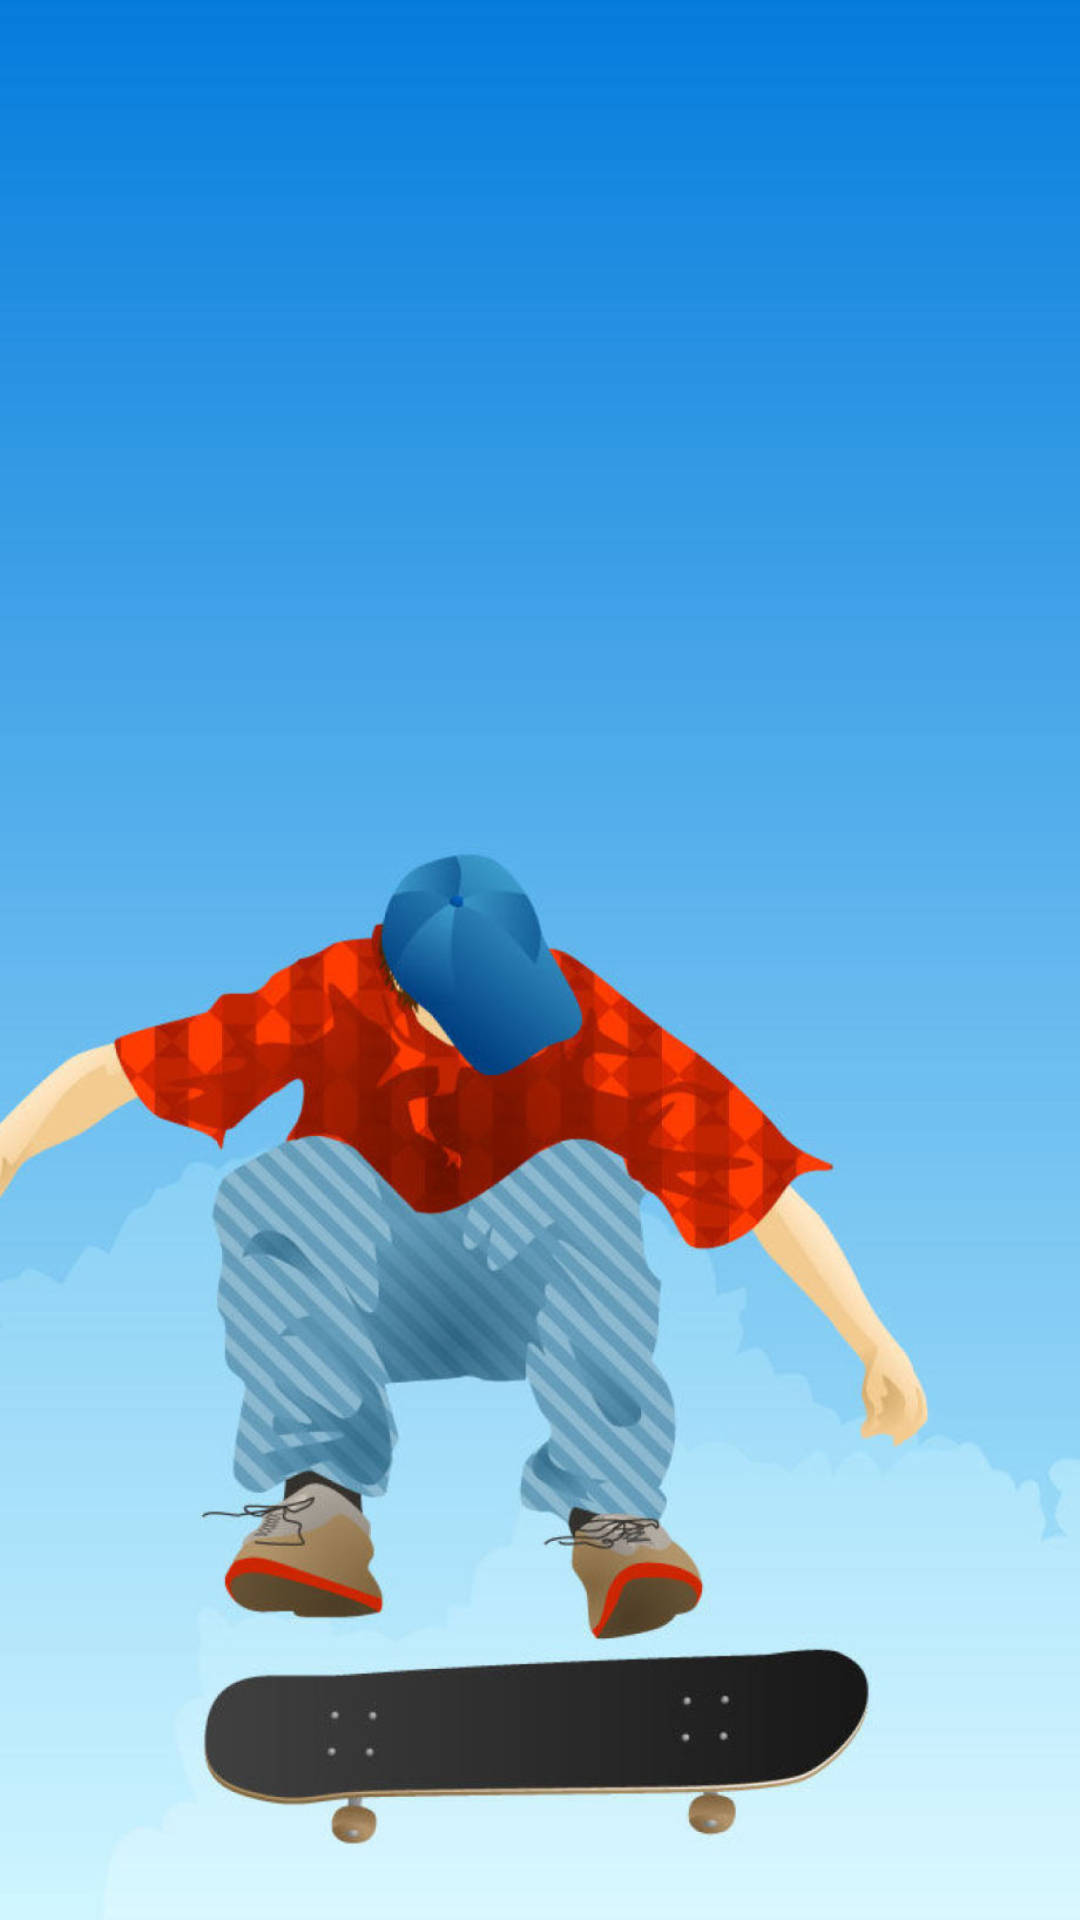 Aesthetic Skater Boy Digital Illustration